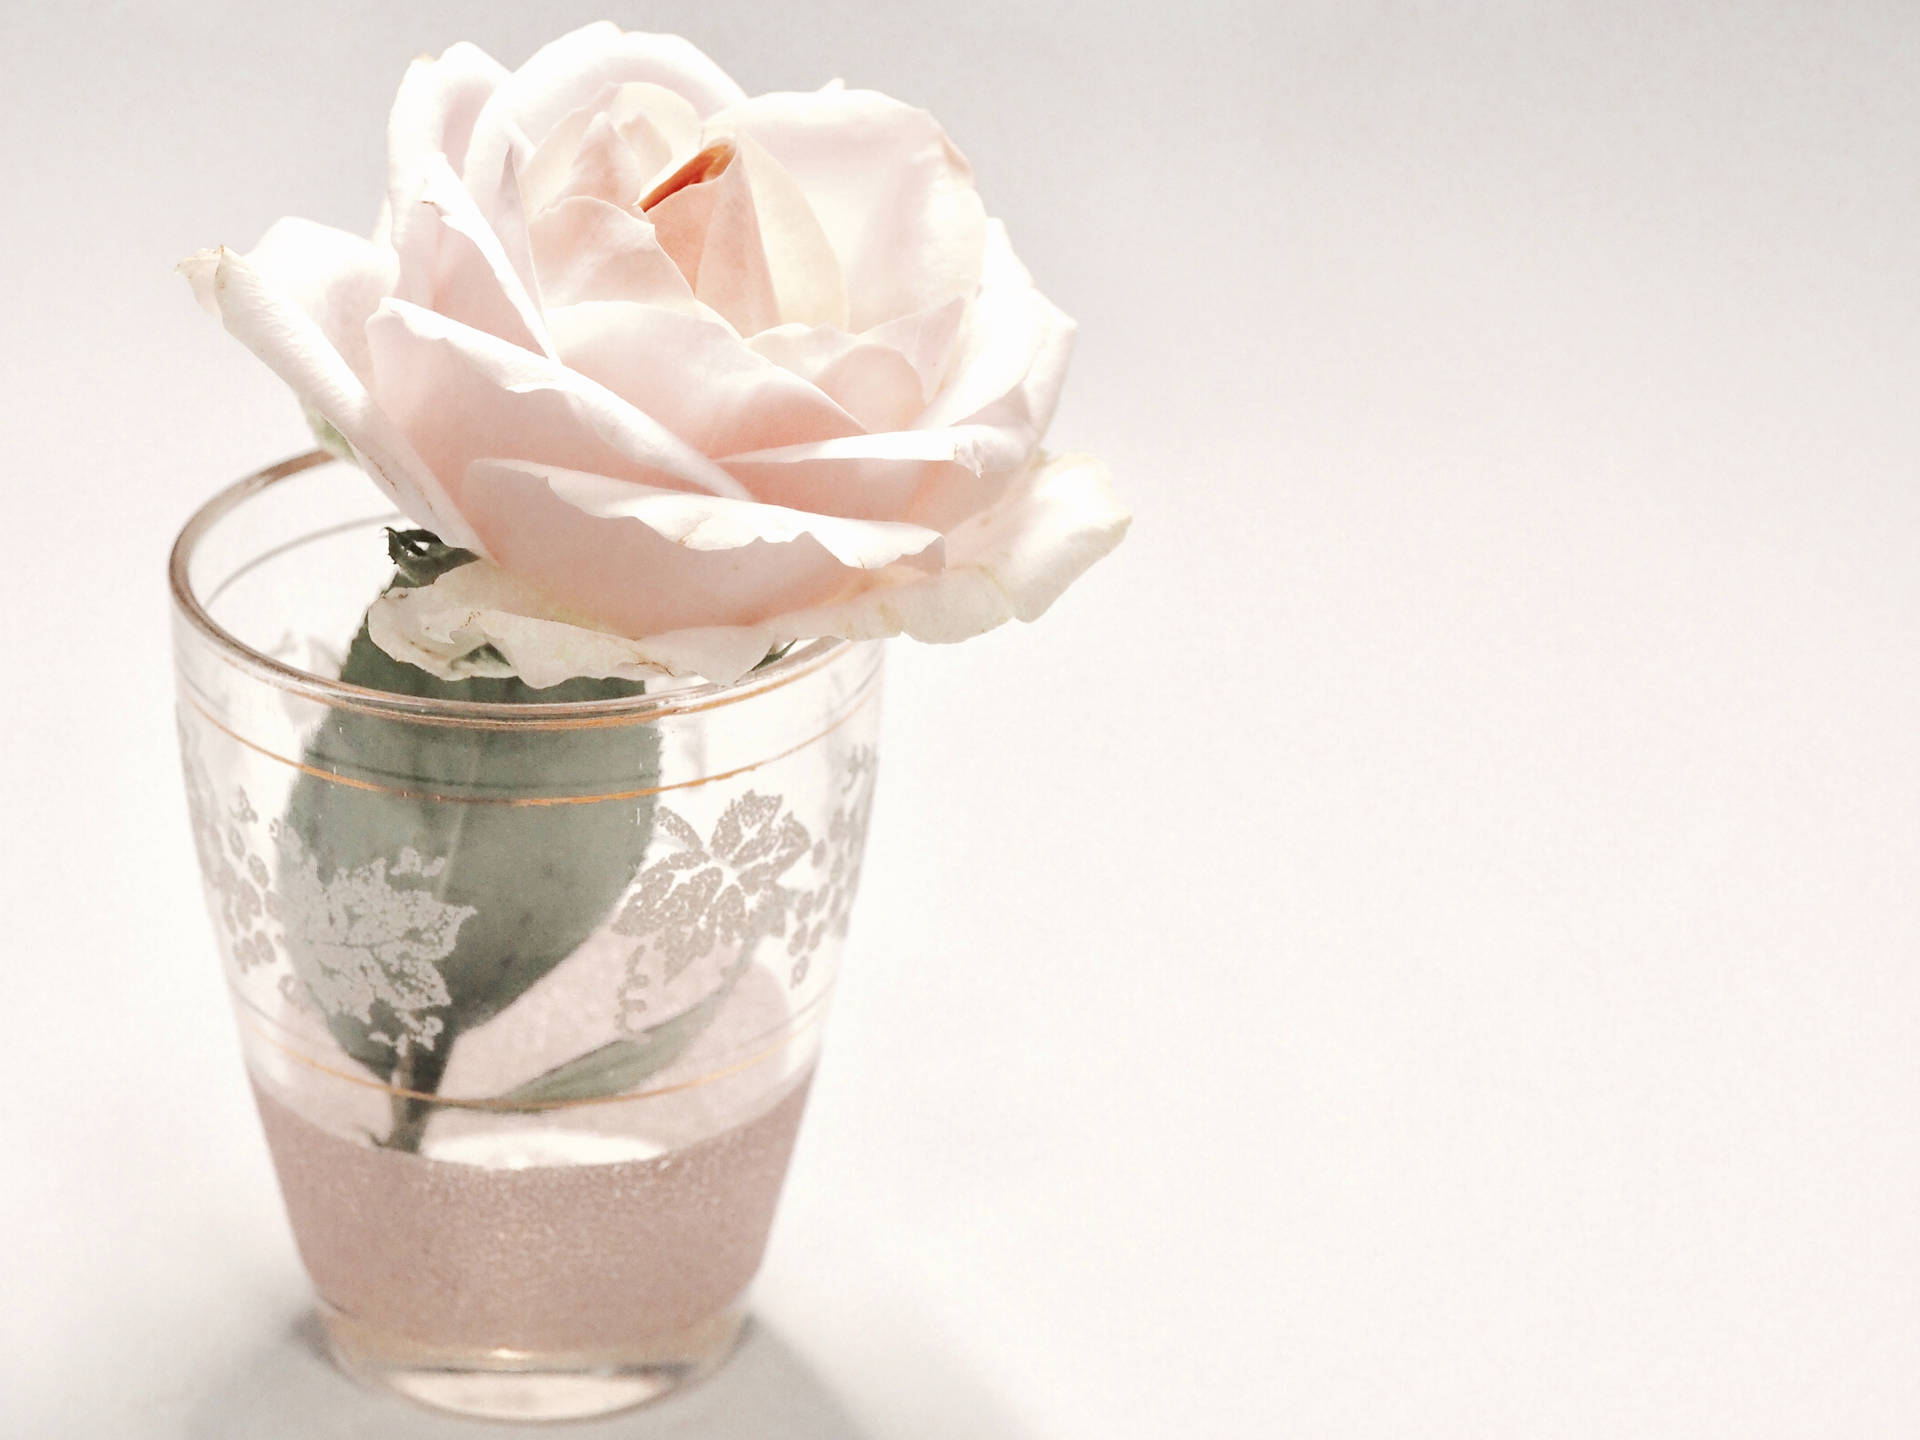 Serene Elegance - A White Rose in Glass Vase Wallpaper